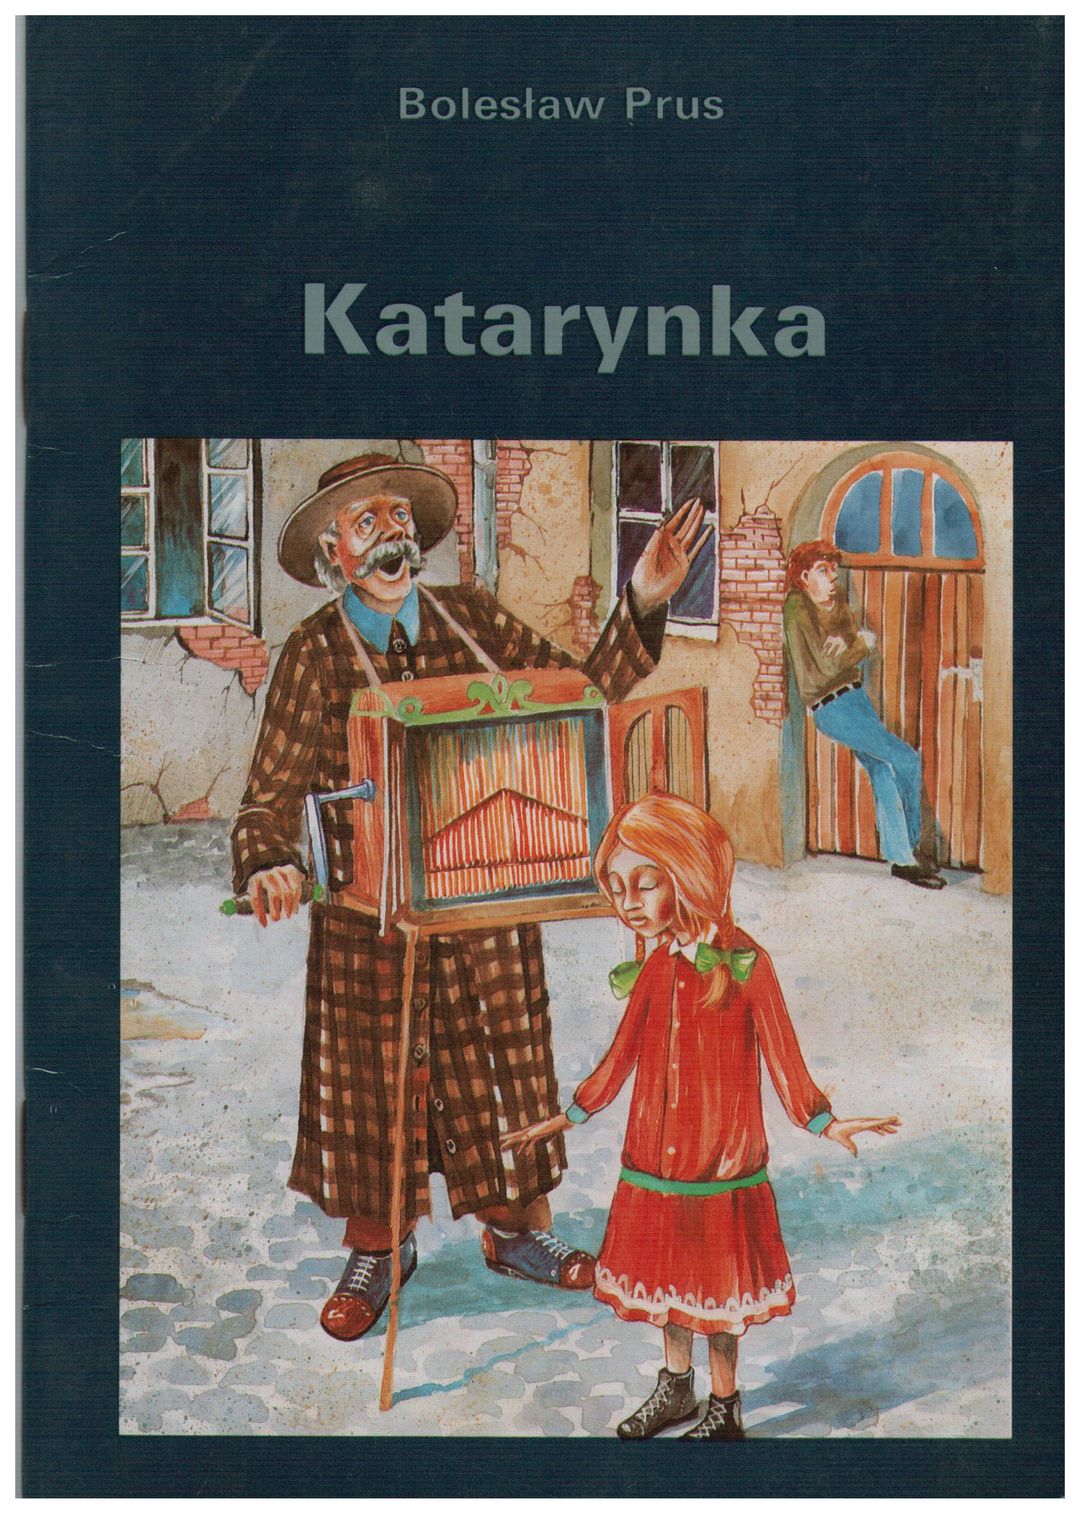 10 Pytań Do Lektury Katarynka „Katarynka” Bolesław Prus - w.bibliotece.pl